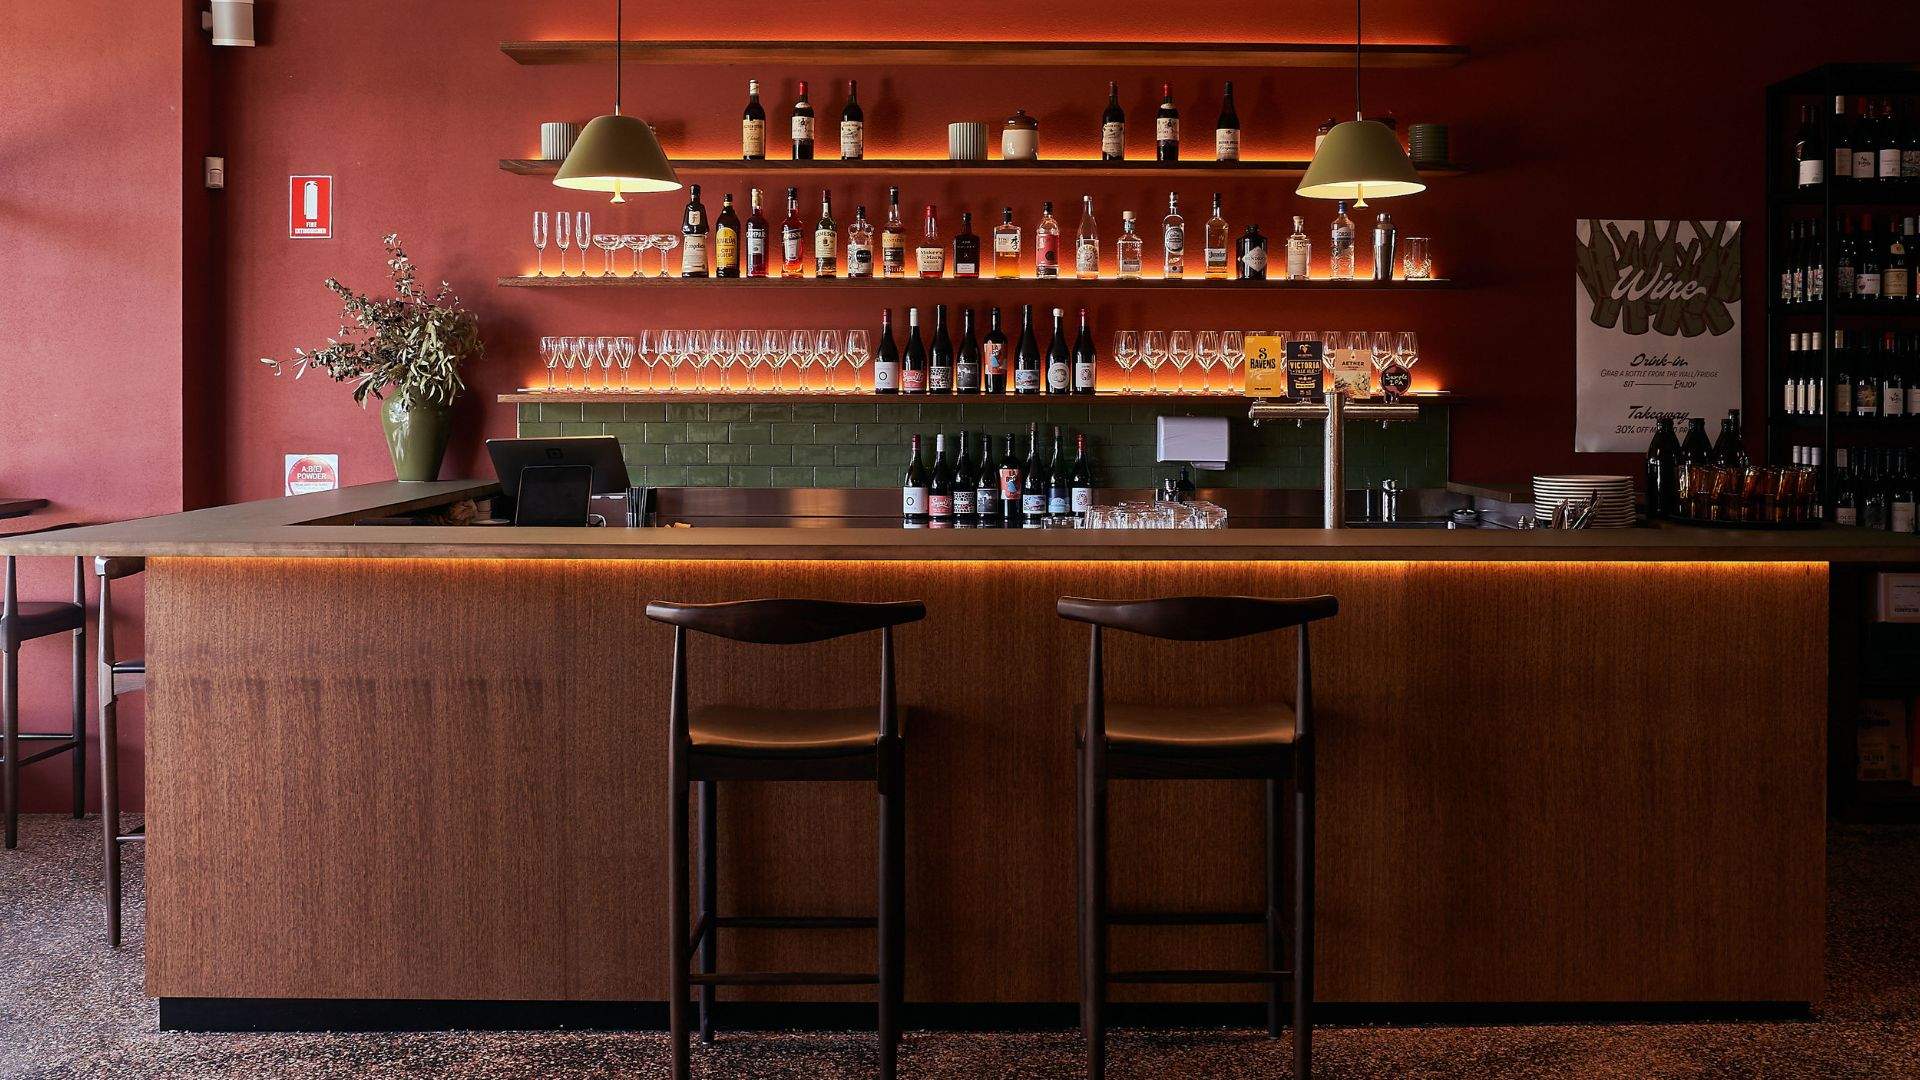 Railway Wine Bar, interiors